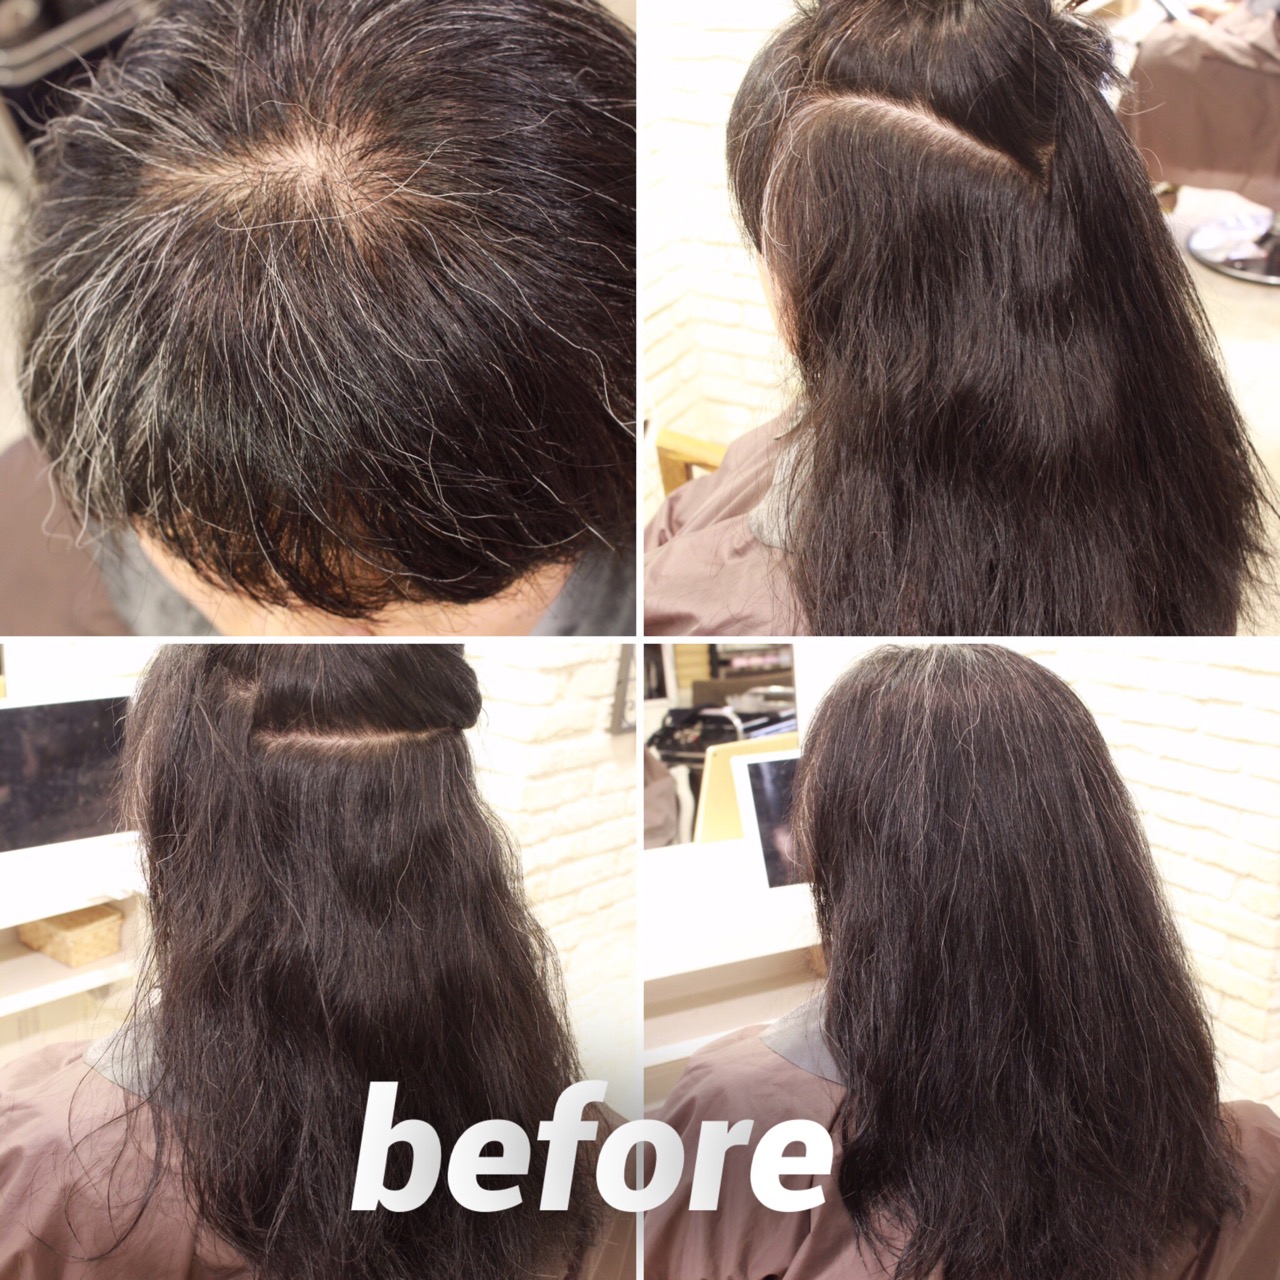 施術例 Before After 白髪ってなんでクセが強いのか を検証する 縮毛矯正 クセ毛専門美容院